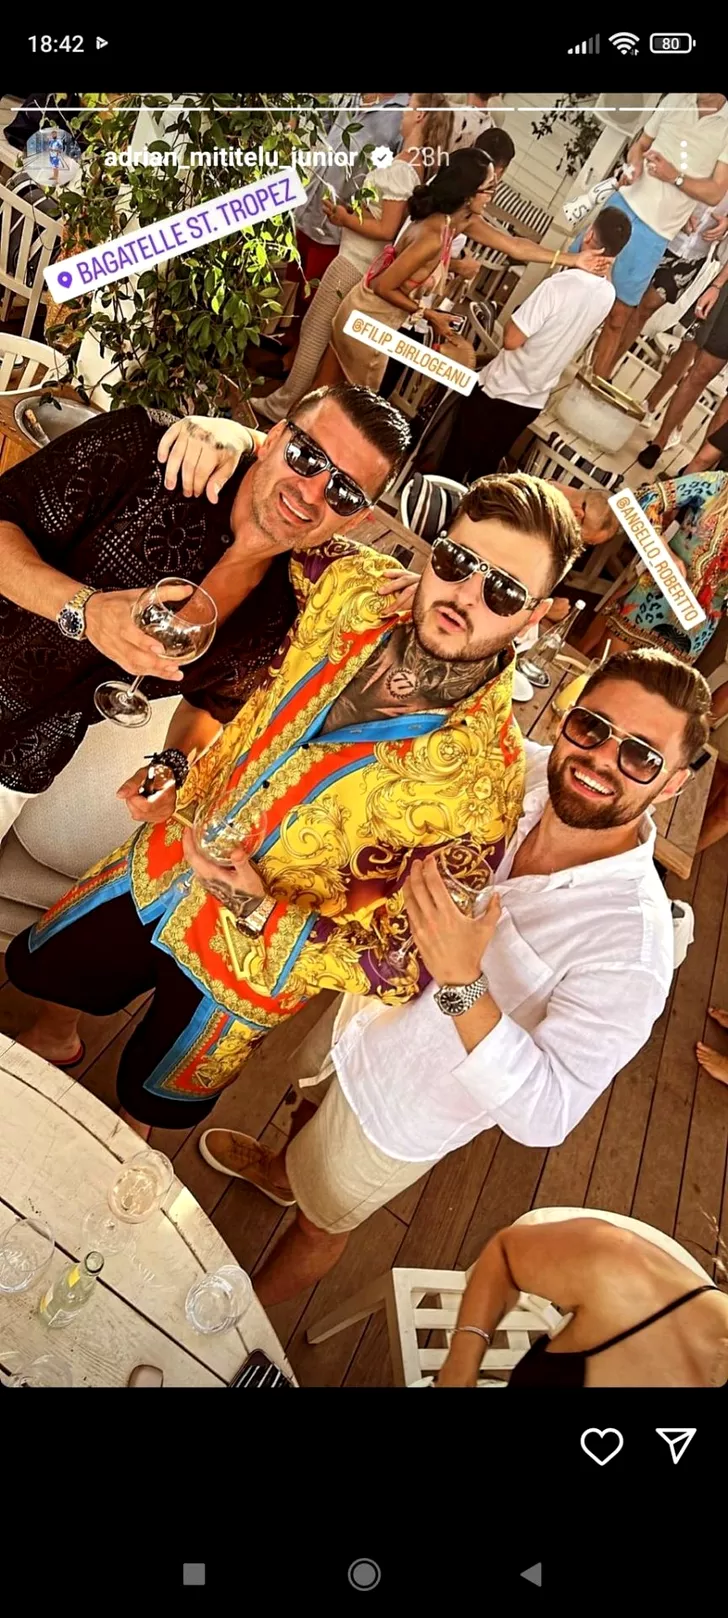 Adrian Mititelu Jr., alături de prietenii săi la Saint Tropez